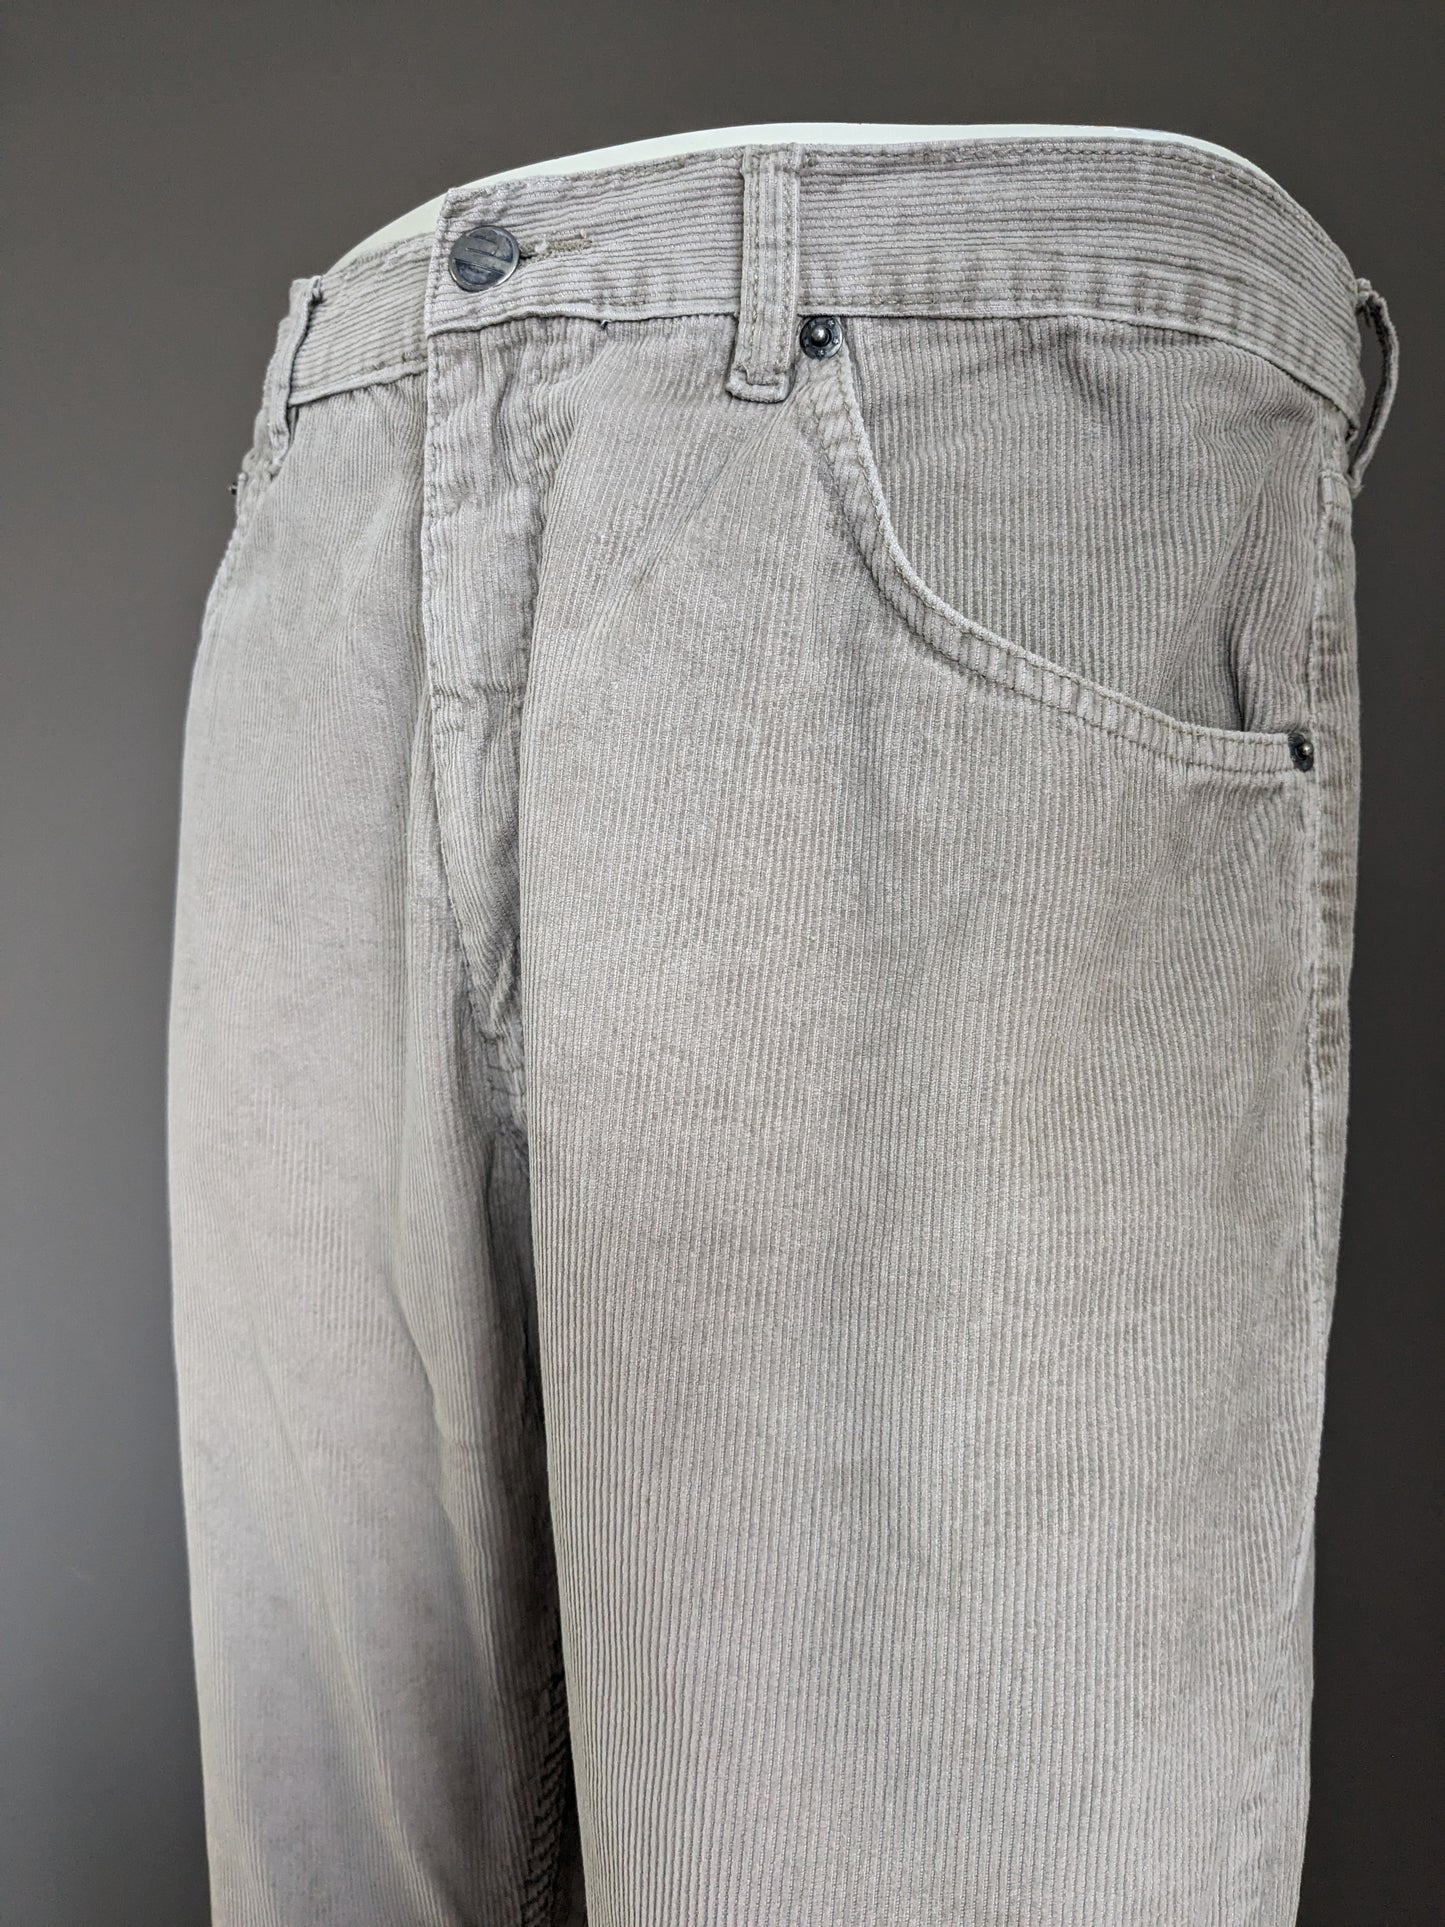 Vintage Canor rib broek. Beige. Maat W34 - L30.